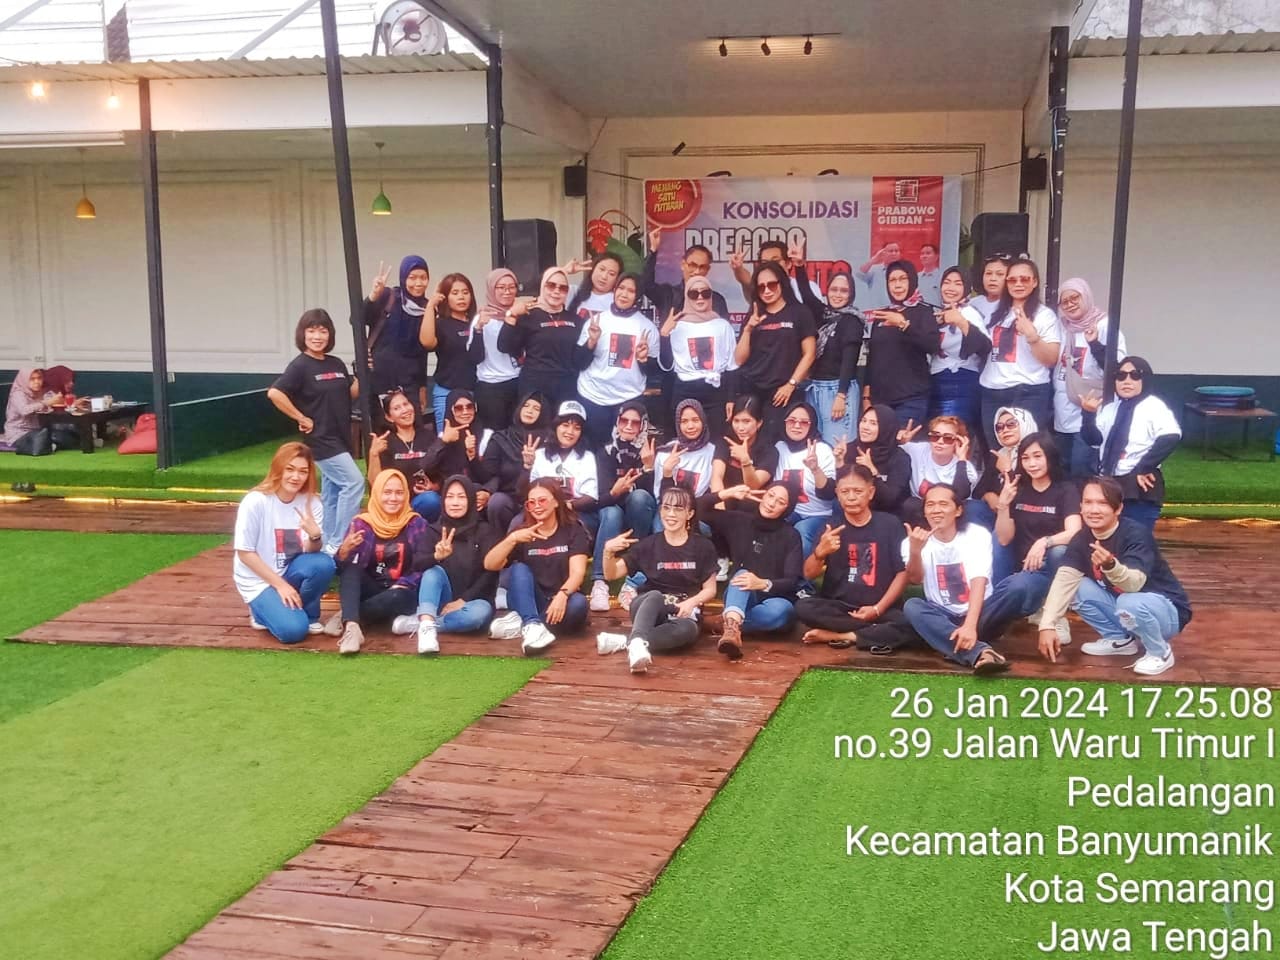 Relawan Permpuan Bregada Juwita Bolonemase Kelurahan Banyumanik Kota Semarang Siap Menangkan Pasangan No. 2, Prabowo – Gibran